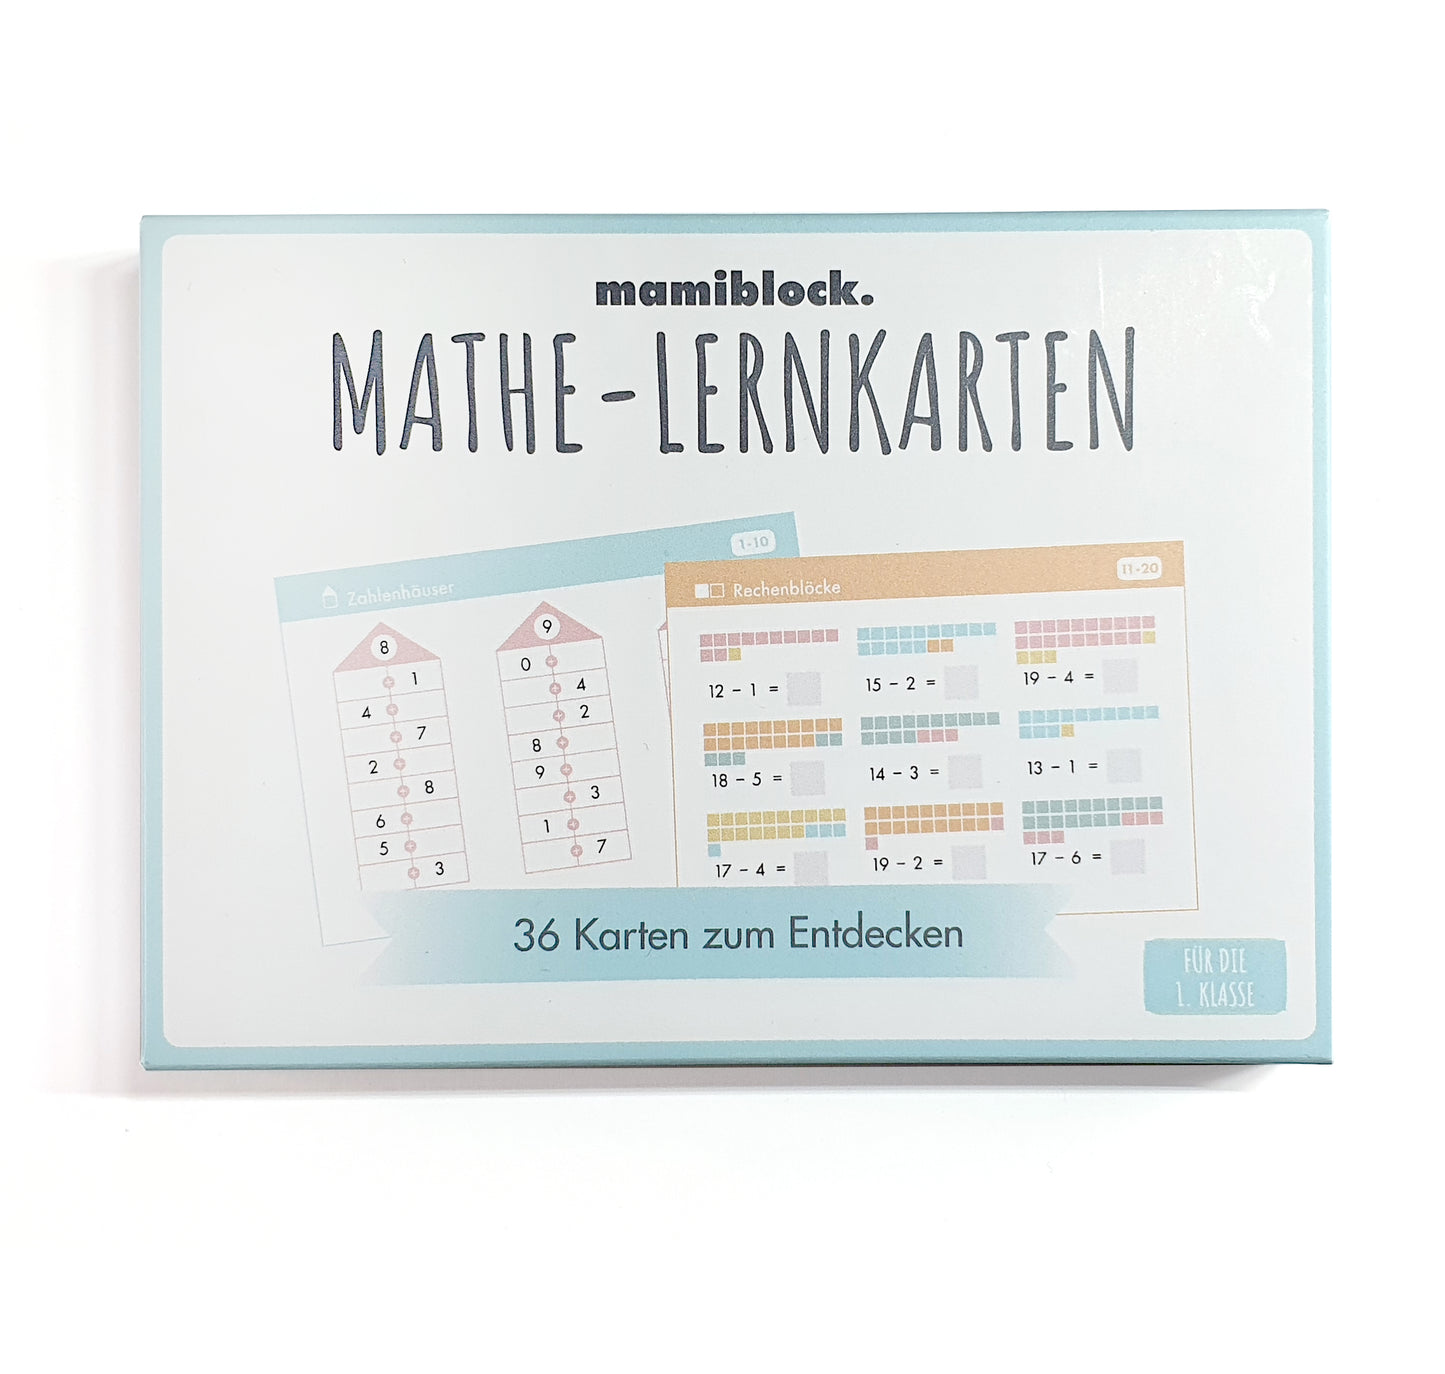 Mathe - Lernkarten